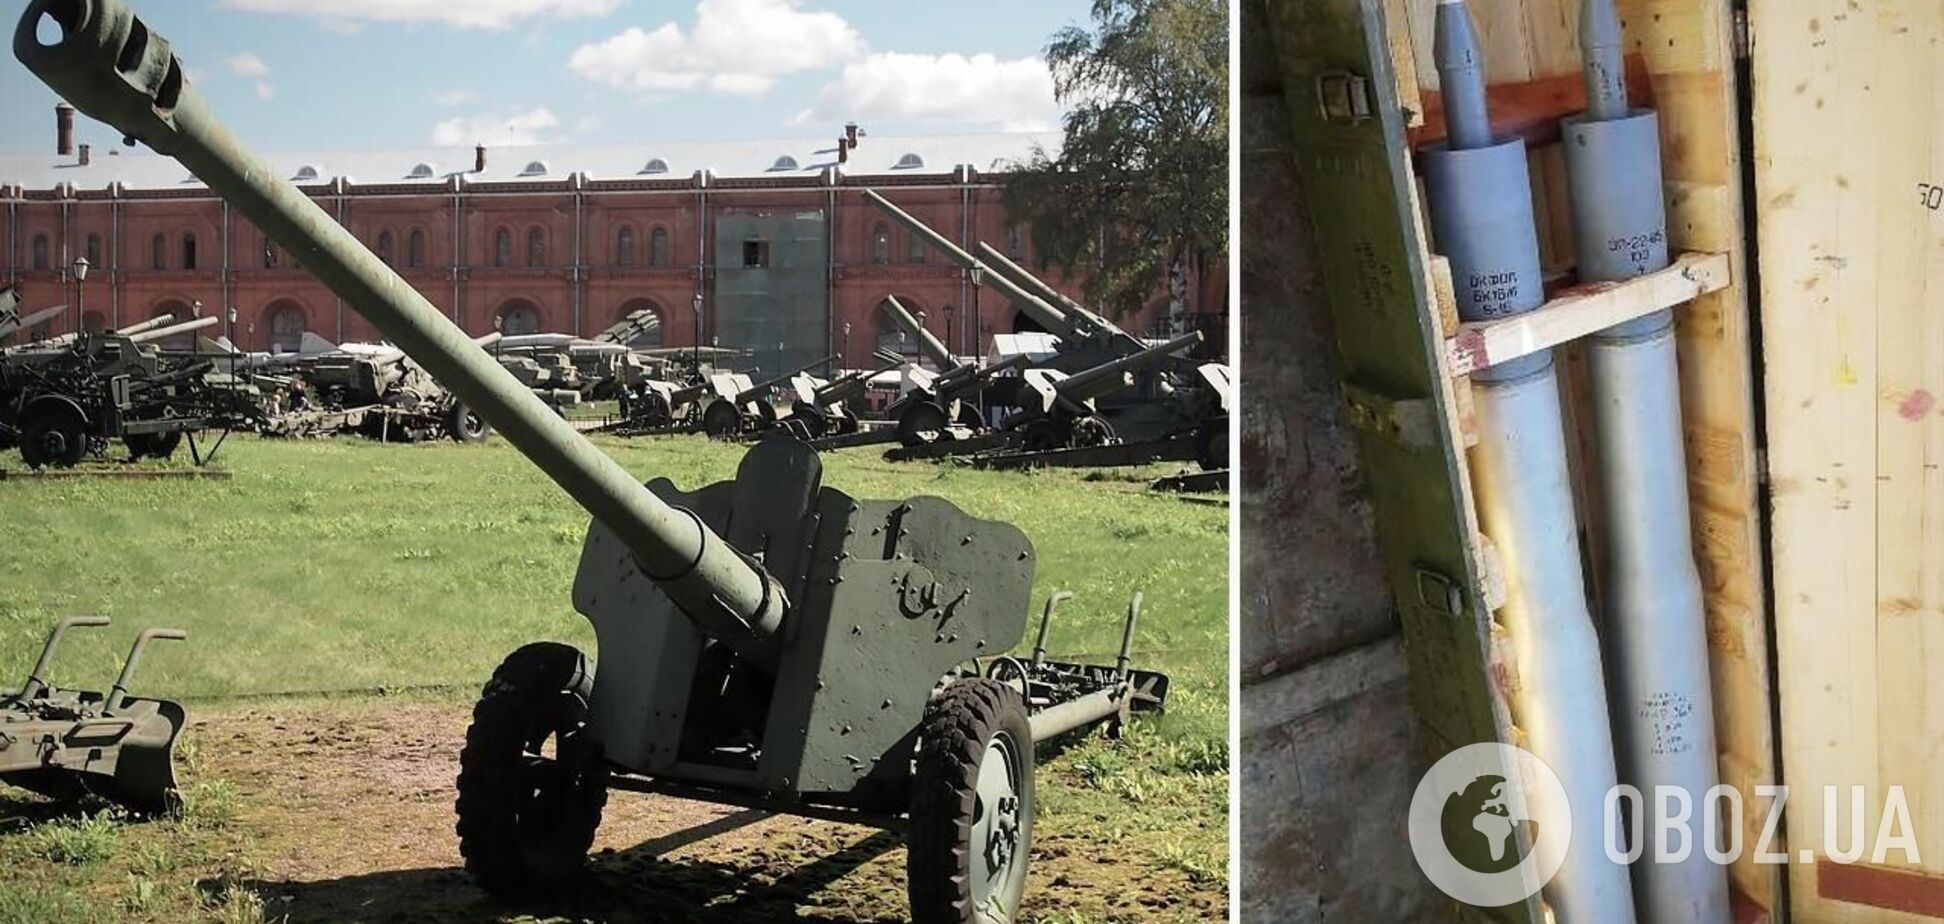 Проблемы россиян с артиллерией серьезнее, чем считалось ранее